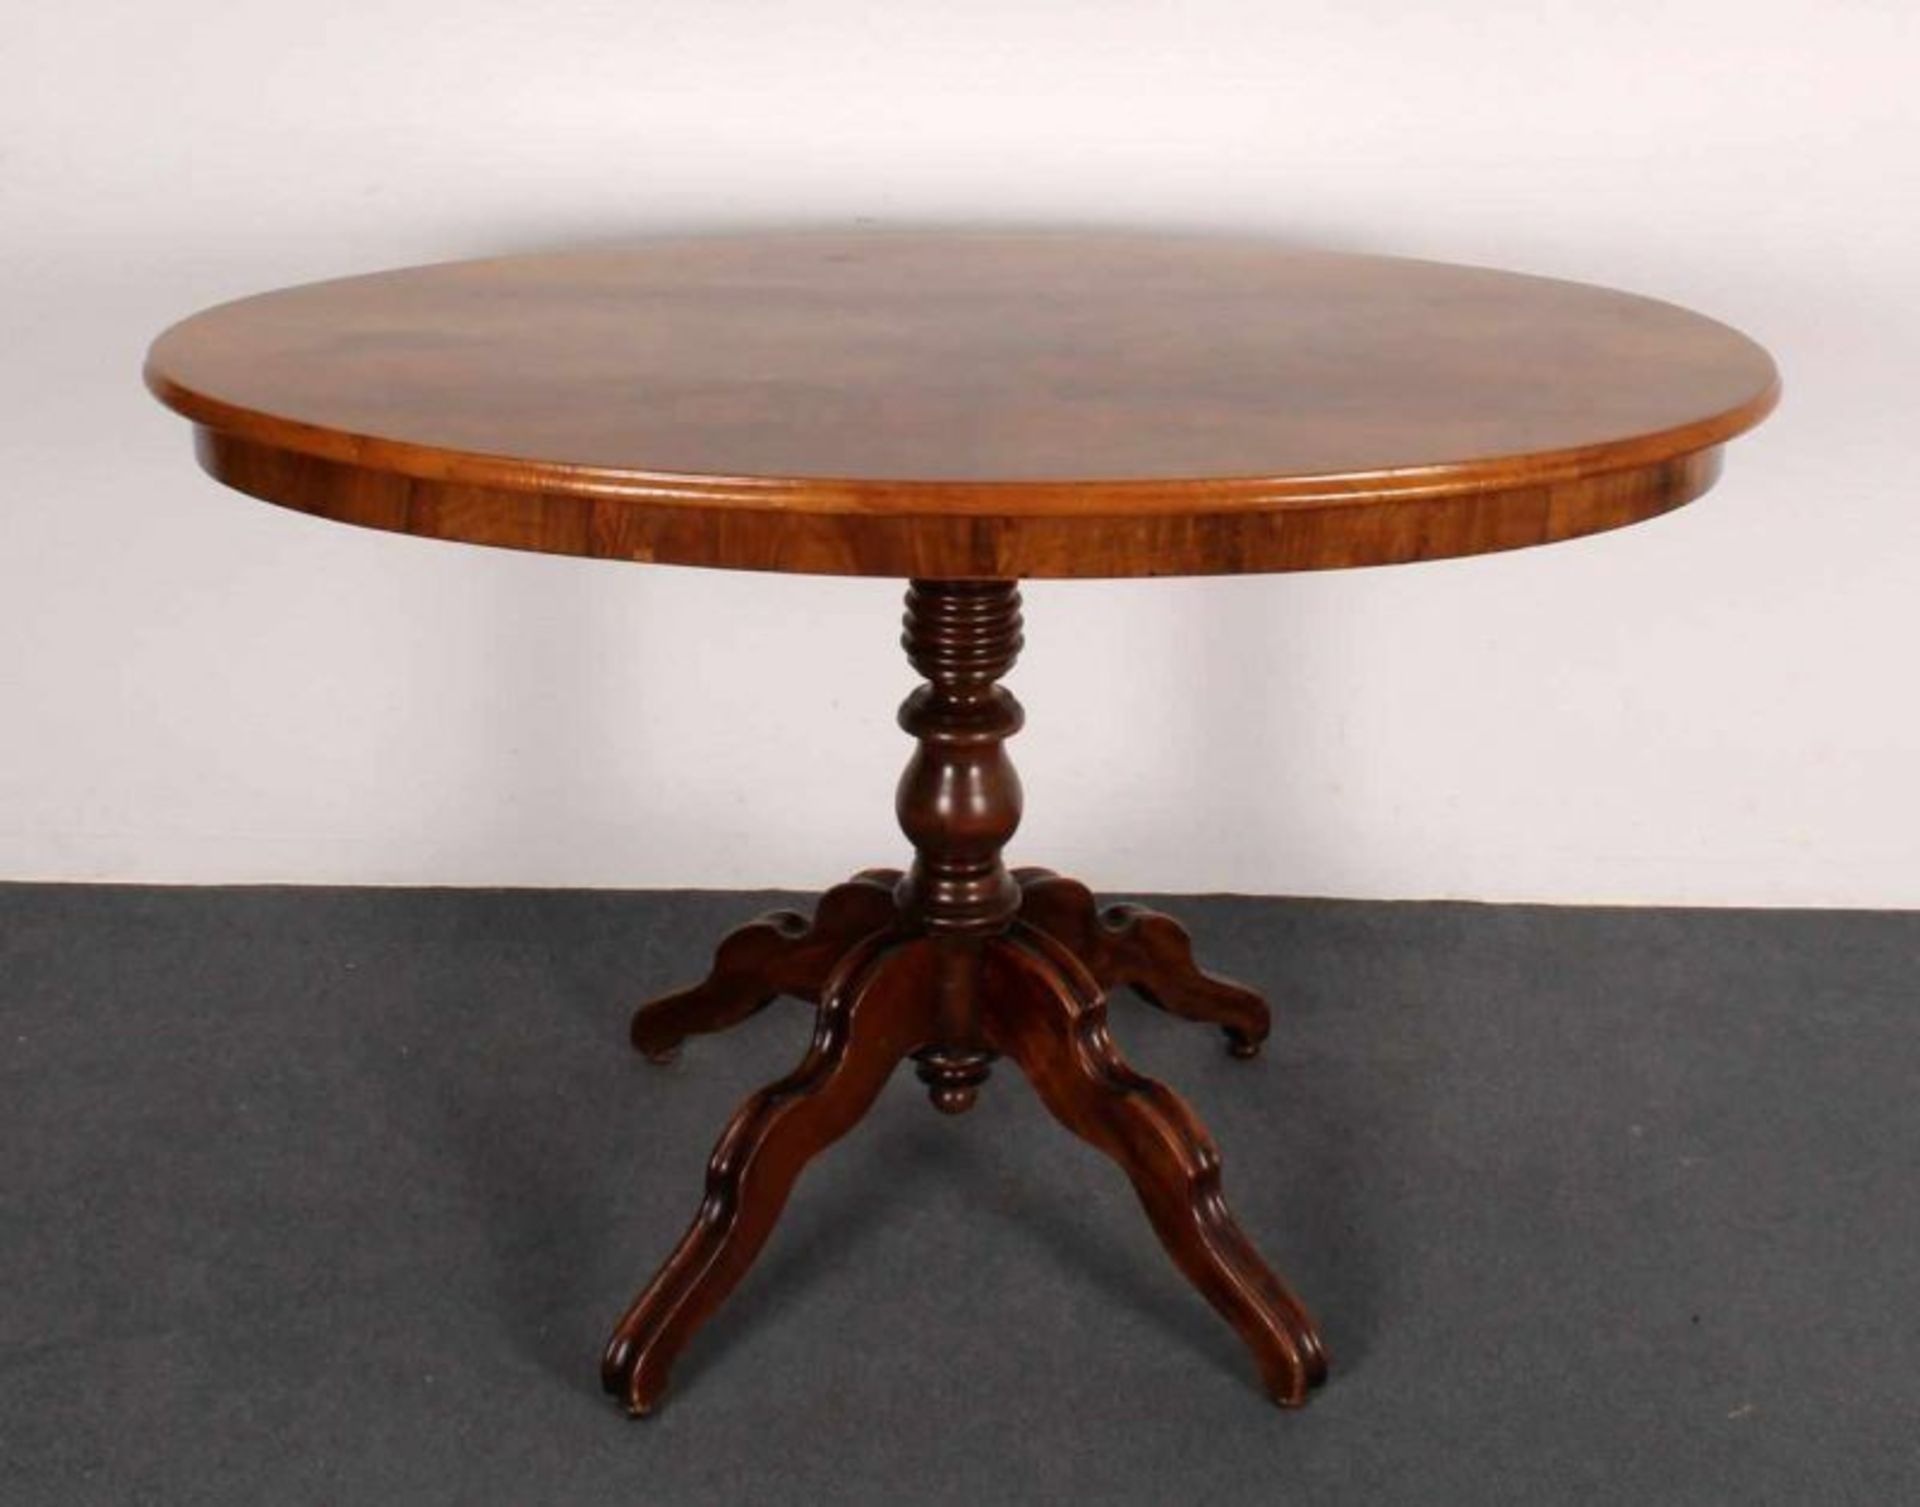 Ovaler Tisch, 19. Jh., Platte Nussmaserholz, Mittelschaft auf Vierfuß, Fuß Buche nussbaumfarbig,